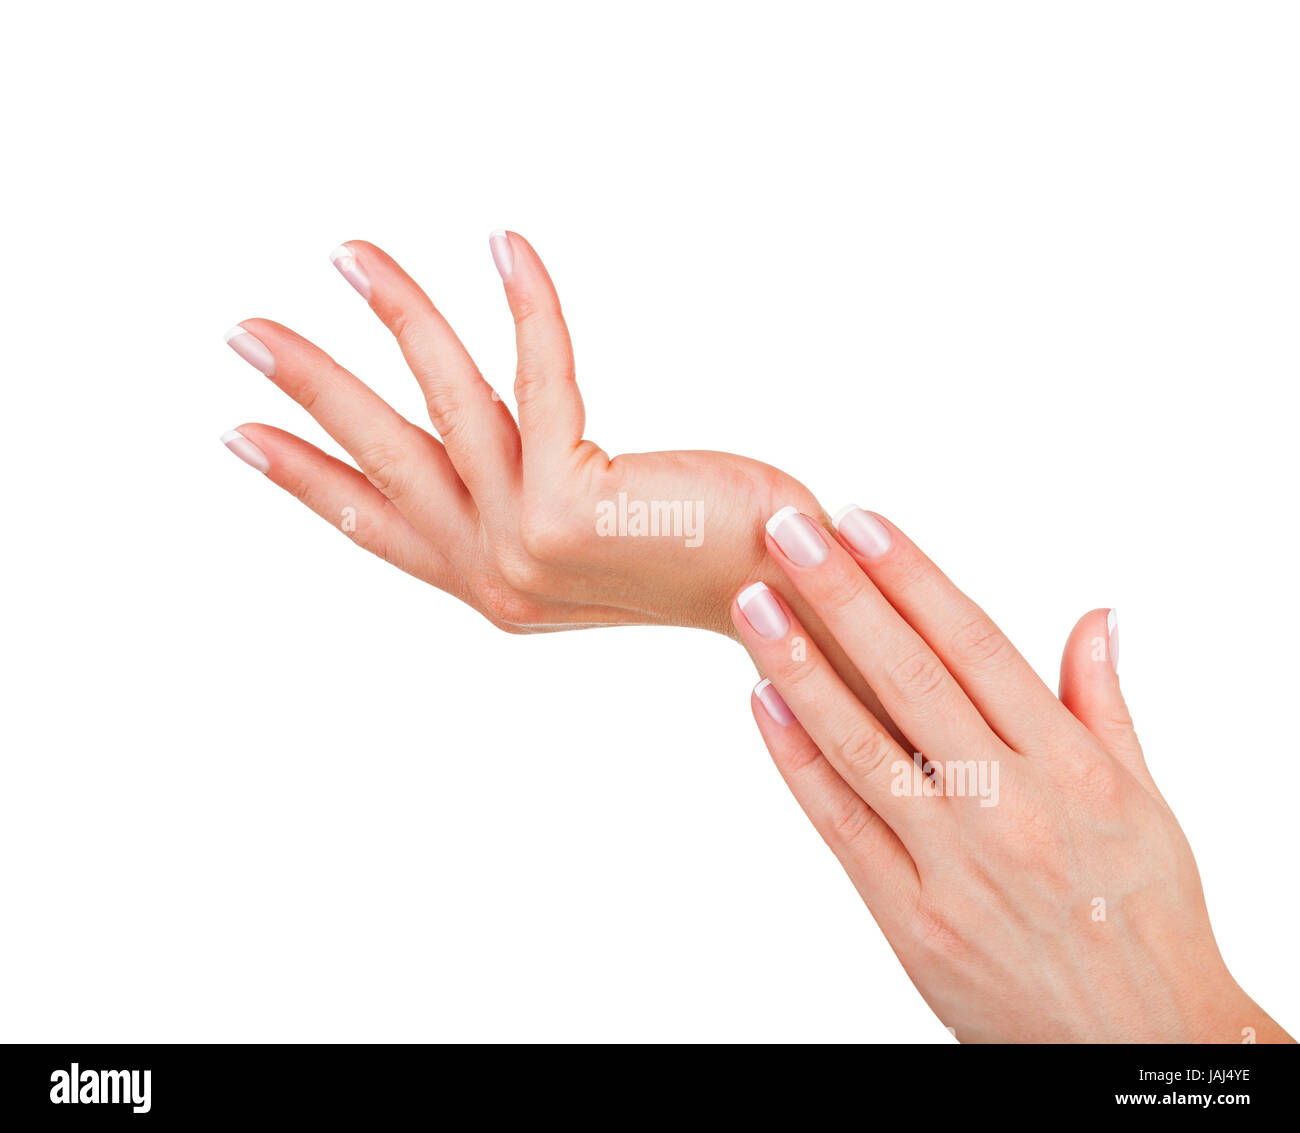 Bella mani femminili con french manicure isolati su sfondo bianco Foto Stock